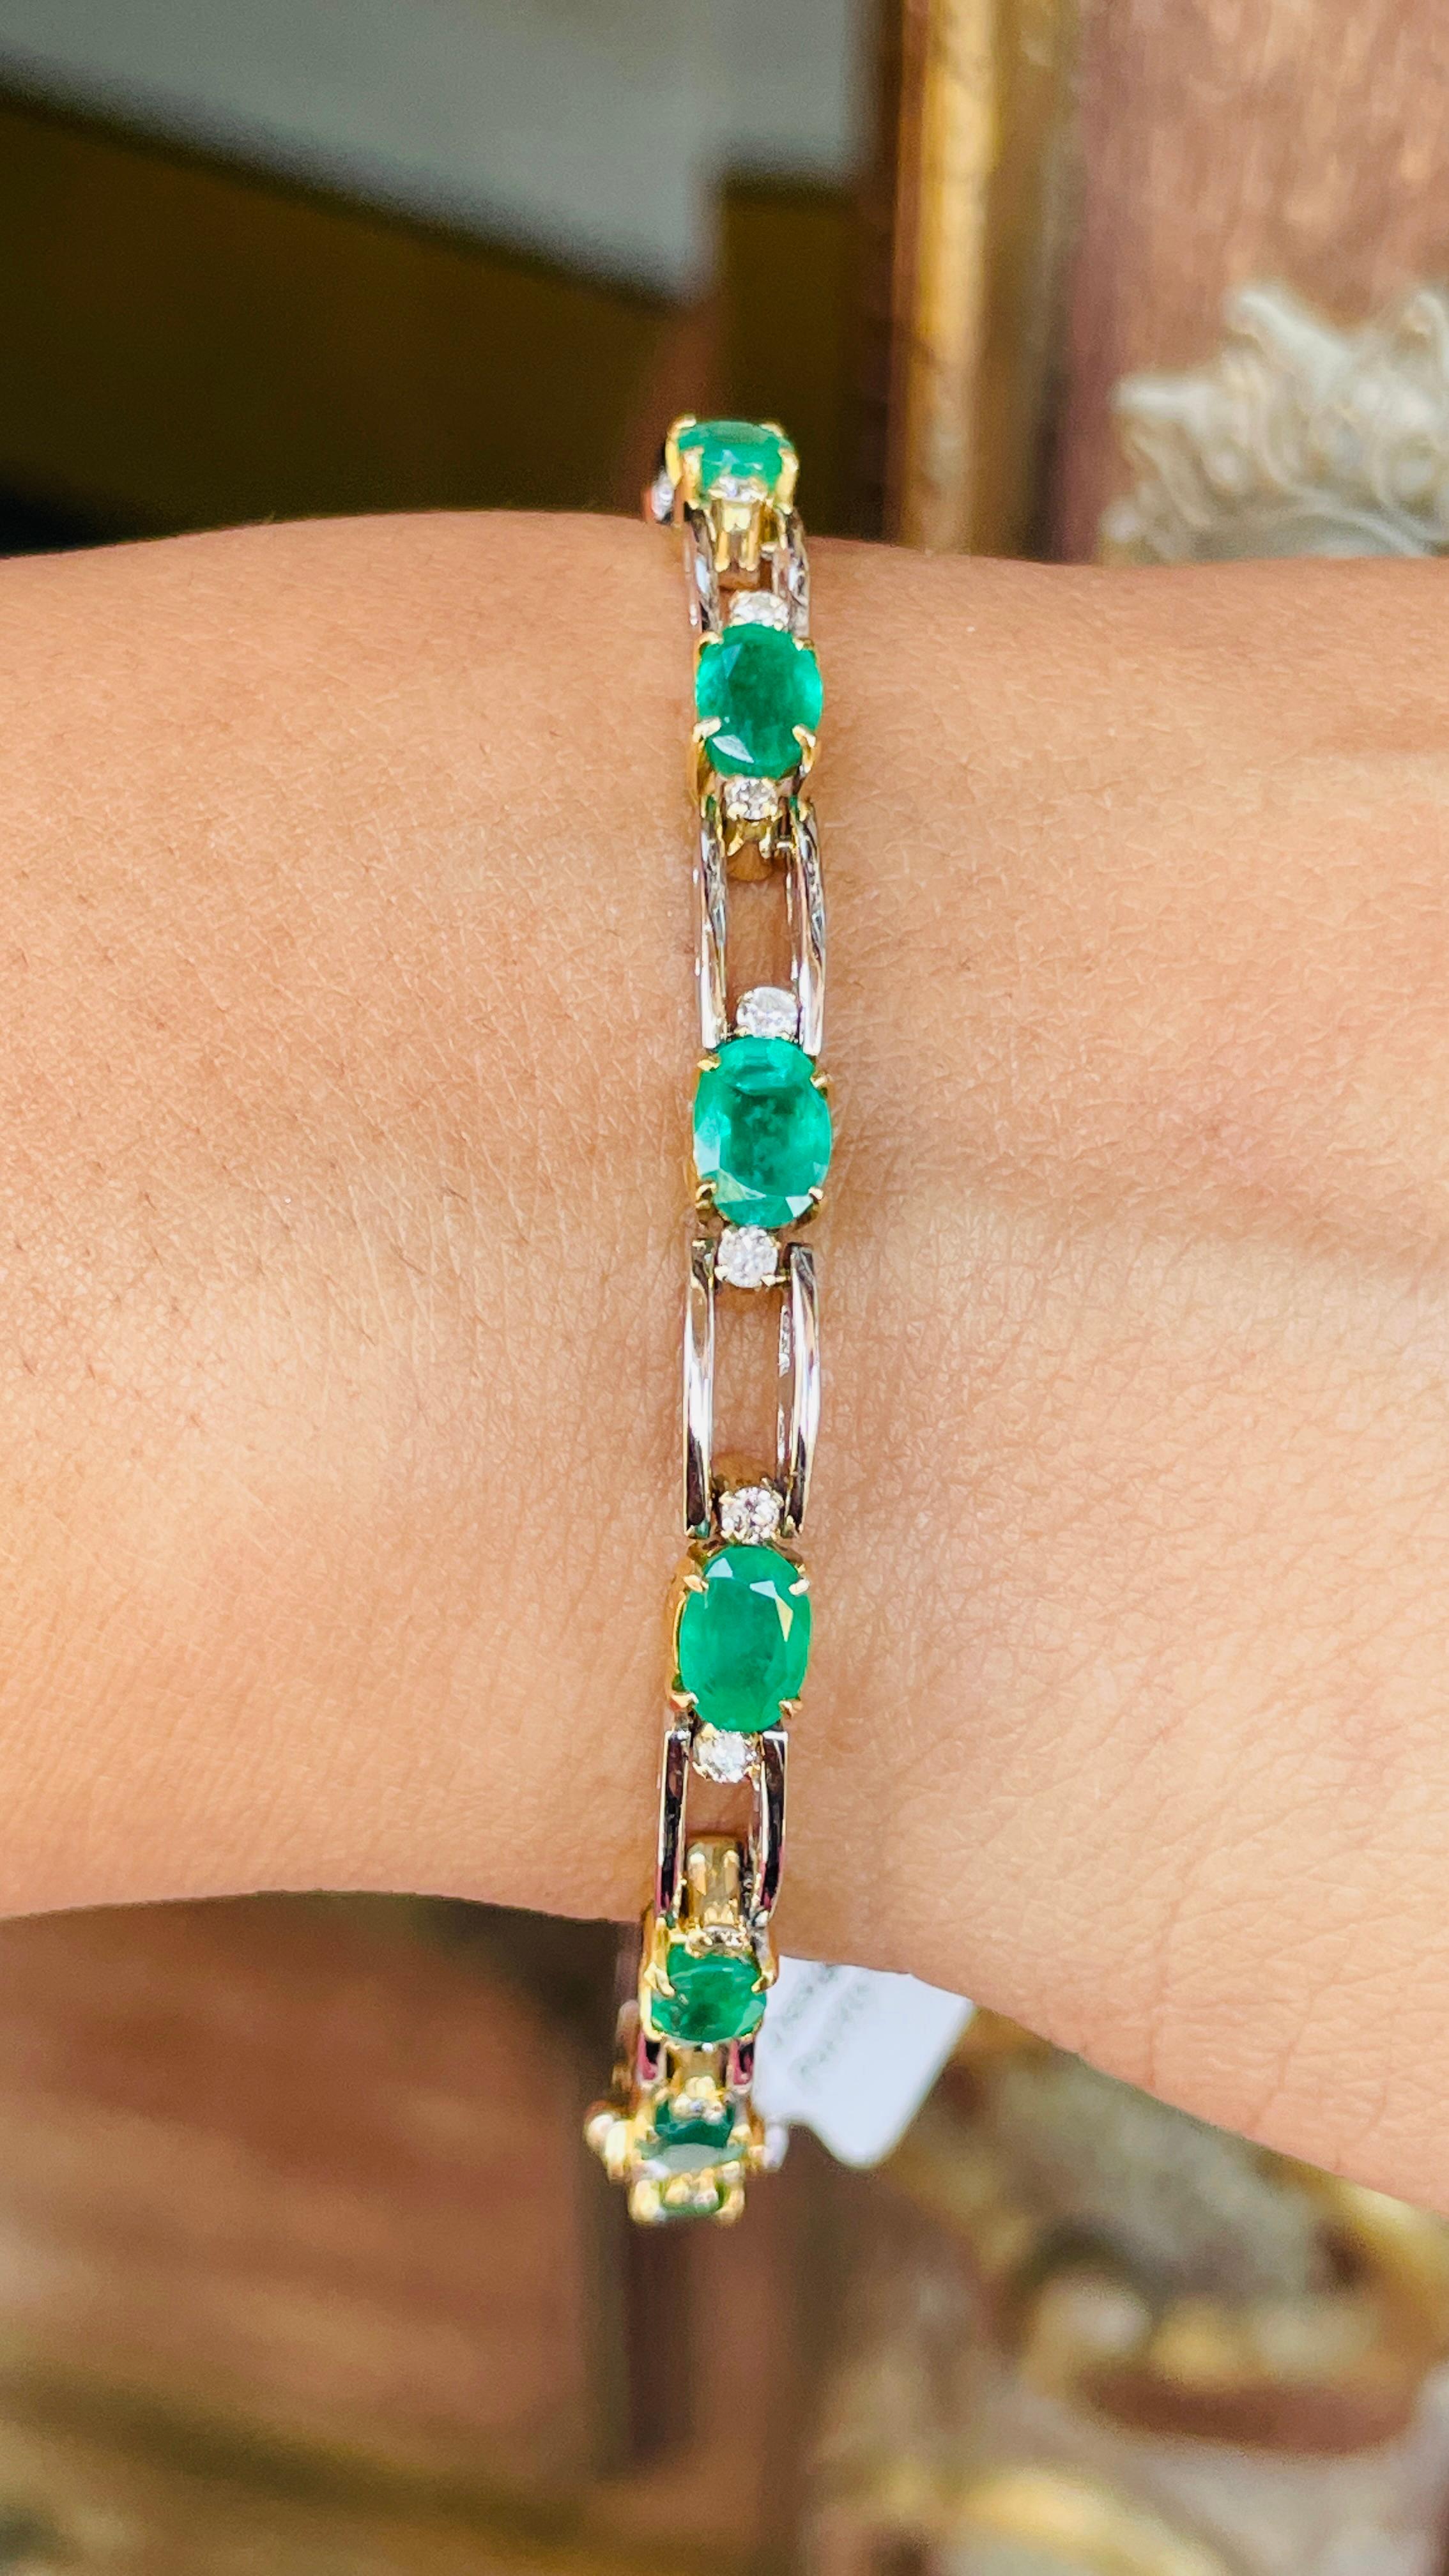 Smaragd- und Diamantarmband aus 18 Karat Gold. Es hat einen perfekten ovalen Schliff Edelstein zu machen Sie stehen auf jeder Gelegenheit oder ein Ereignis.
Ein Gliederarmband ist ein wichtiges Schmuckstück für Ihren Hochzeitstag. Der schlichte und